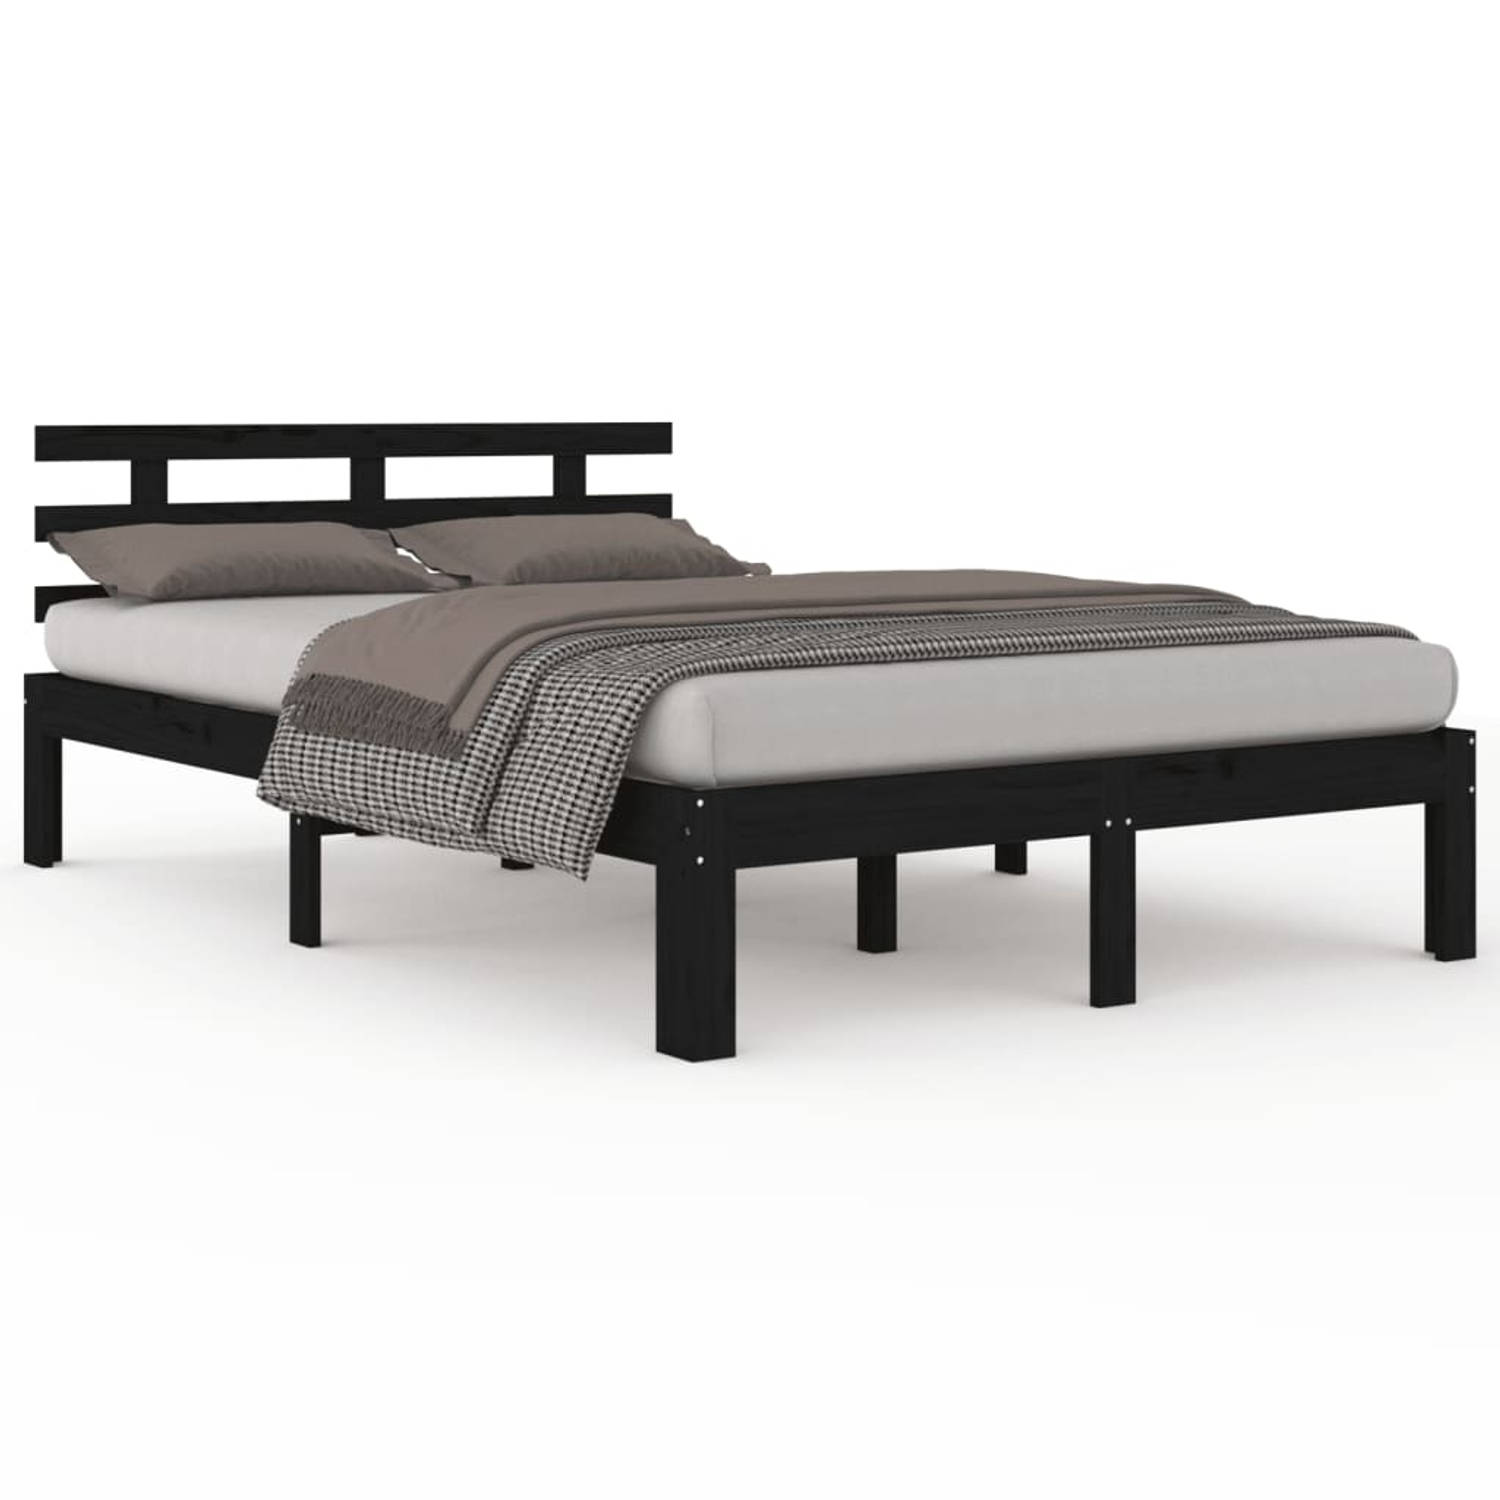 The Living Store Bedframe massief hout zwart 140x200 cm - Bedframe - Bedframes - Bed - Bedbodem - Ledikant - Bed Frame - Massief Houten Bedframe - Slaapmeubel - Tweepersoonsbed - B